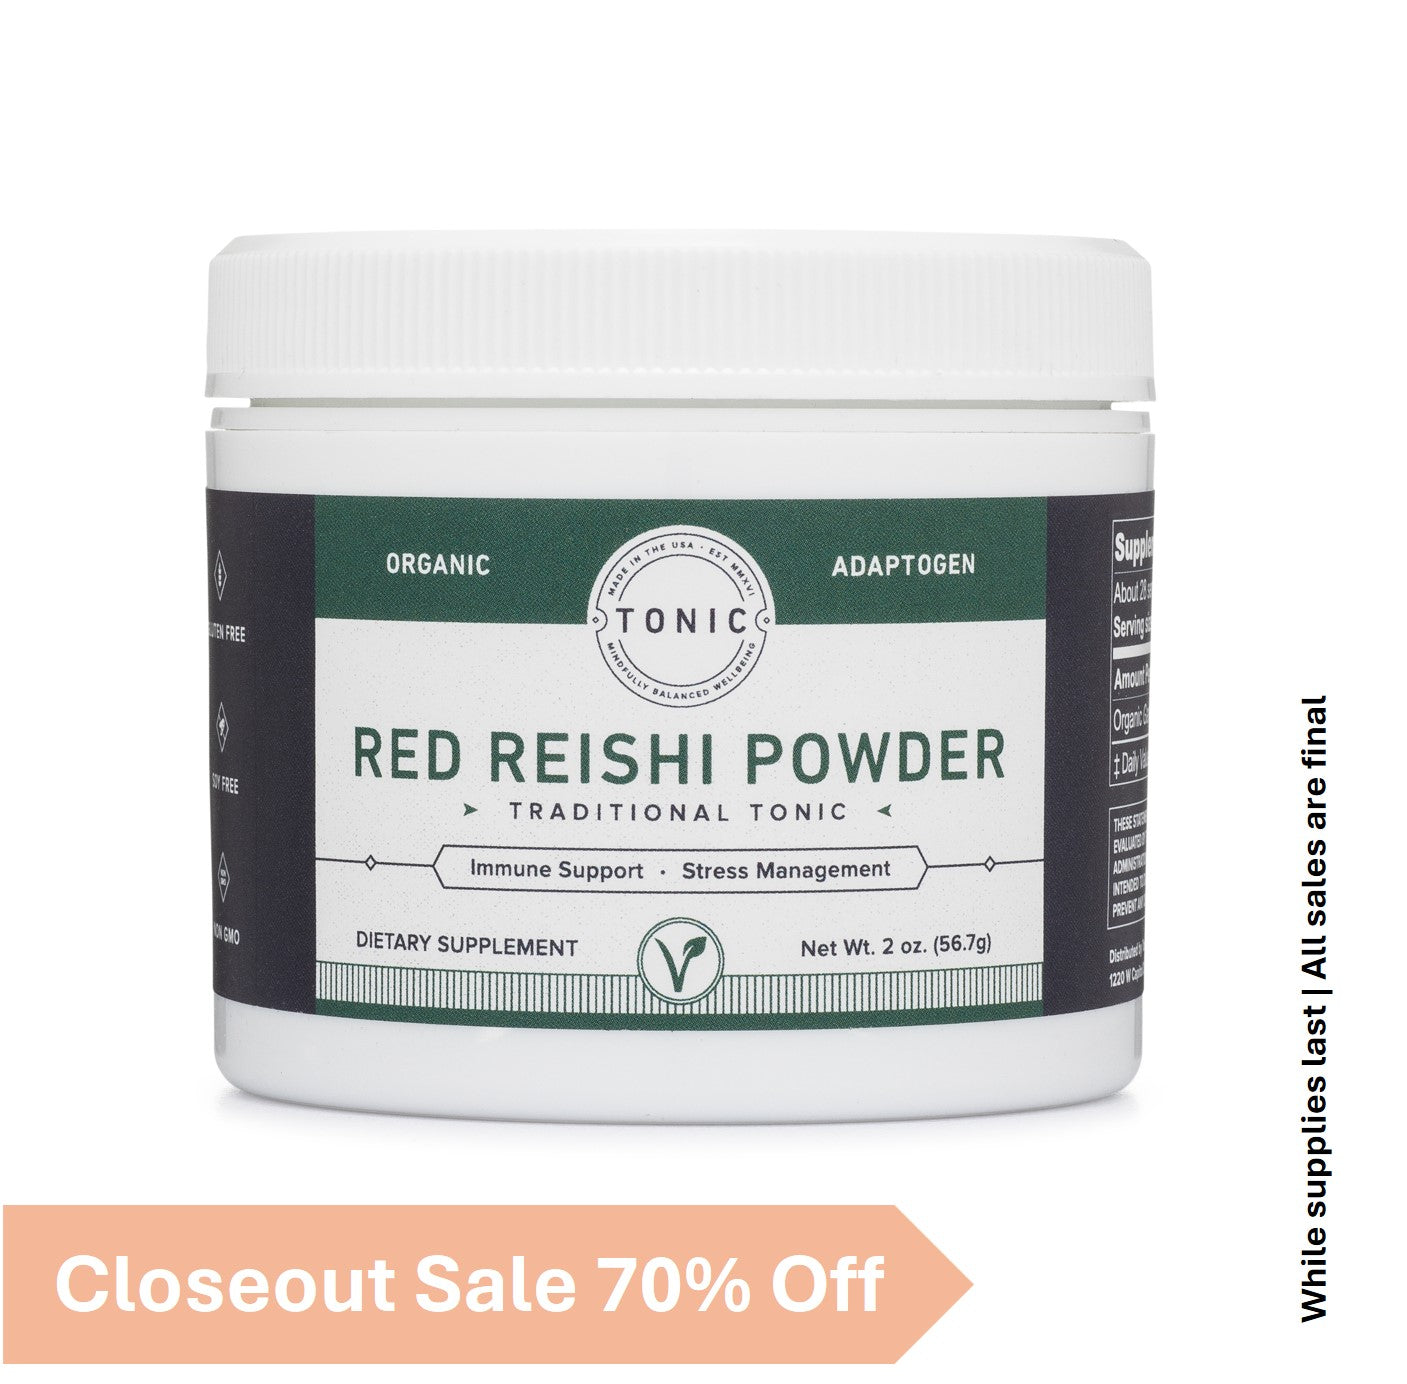 Red Reishi Powder